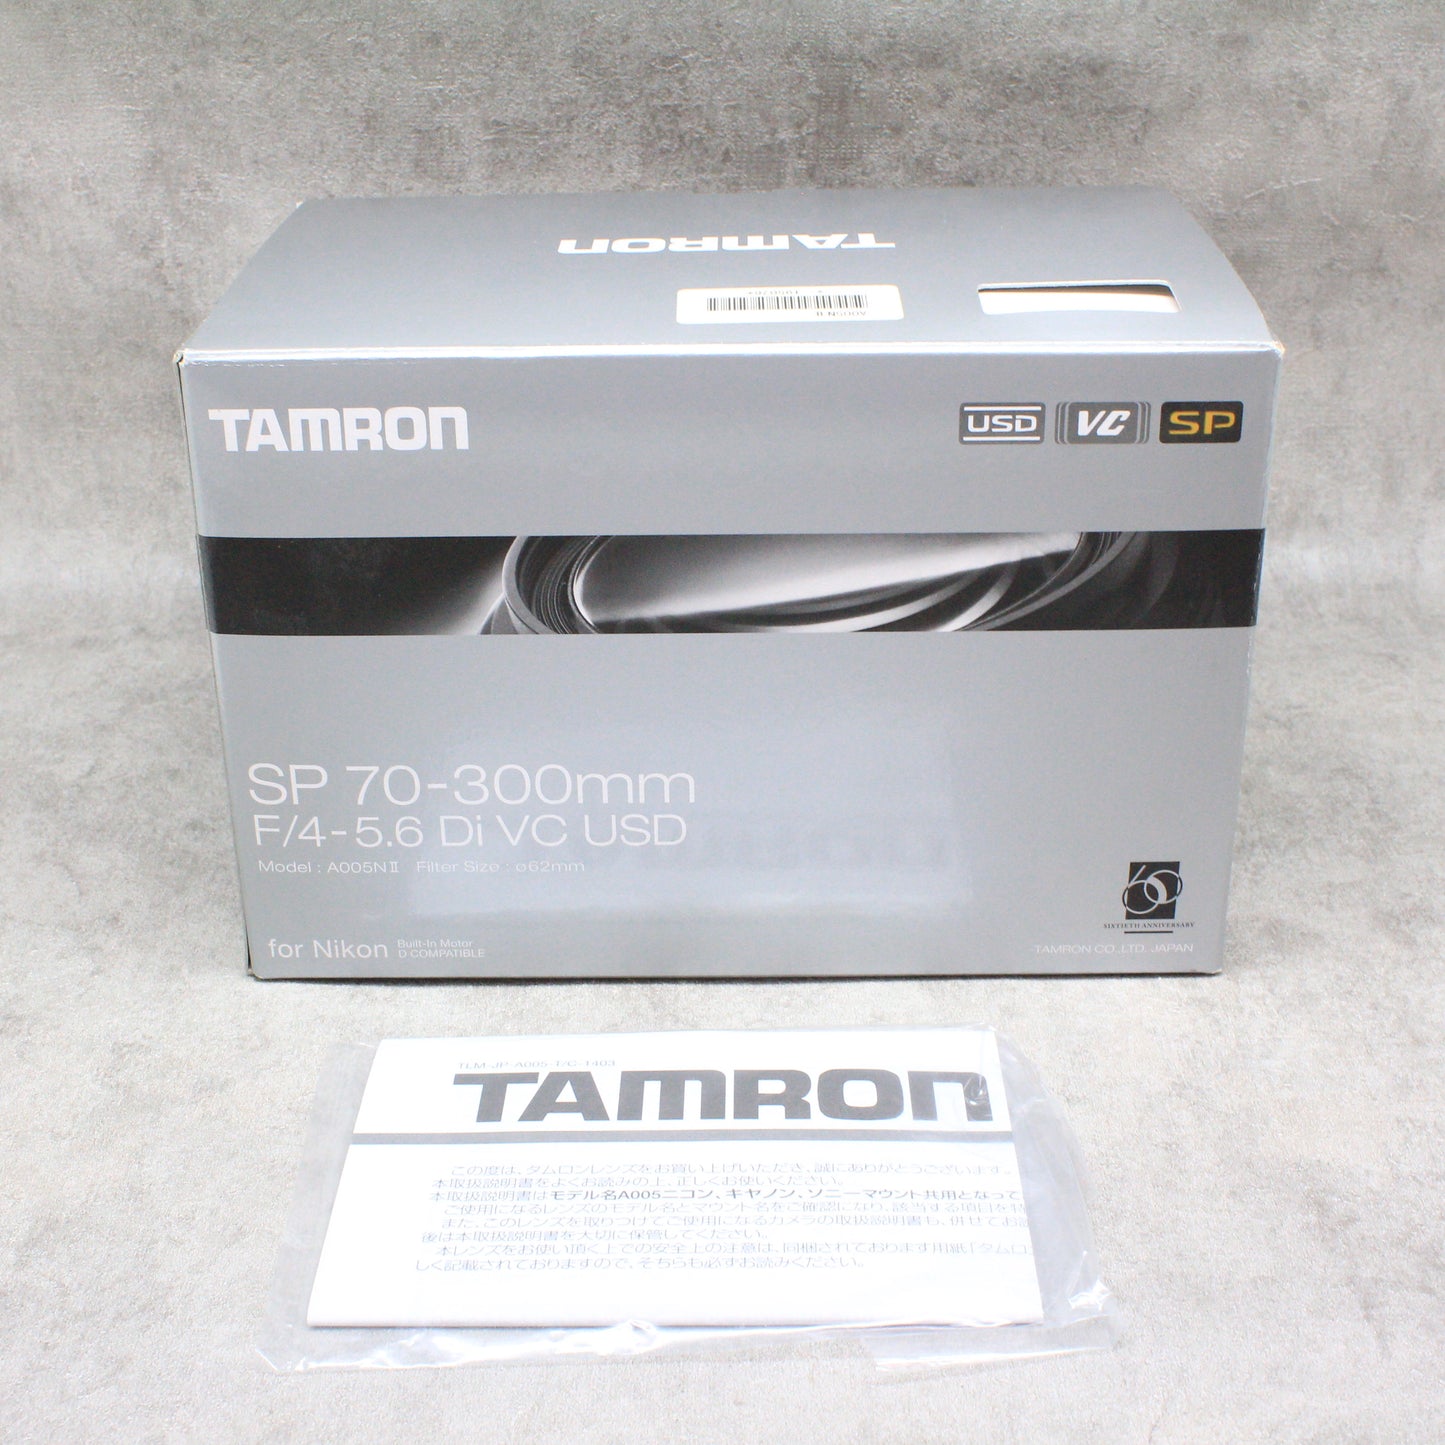 中古品TAMRON 70-300mm F4-5.6 Di VC USD 〈Nikon用〉【10月28日(土) youtube生配信でご紹介】